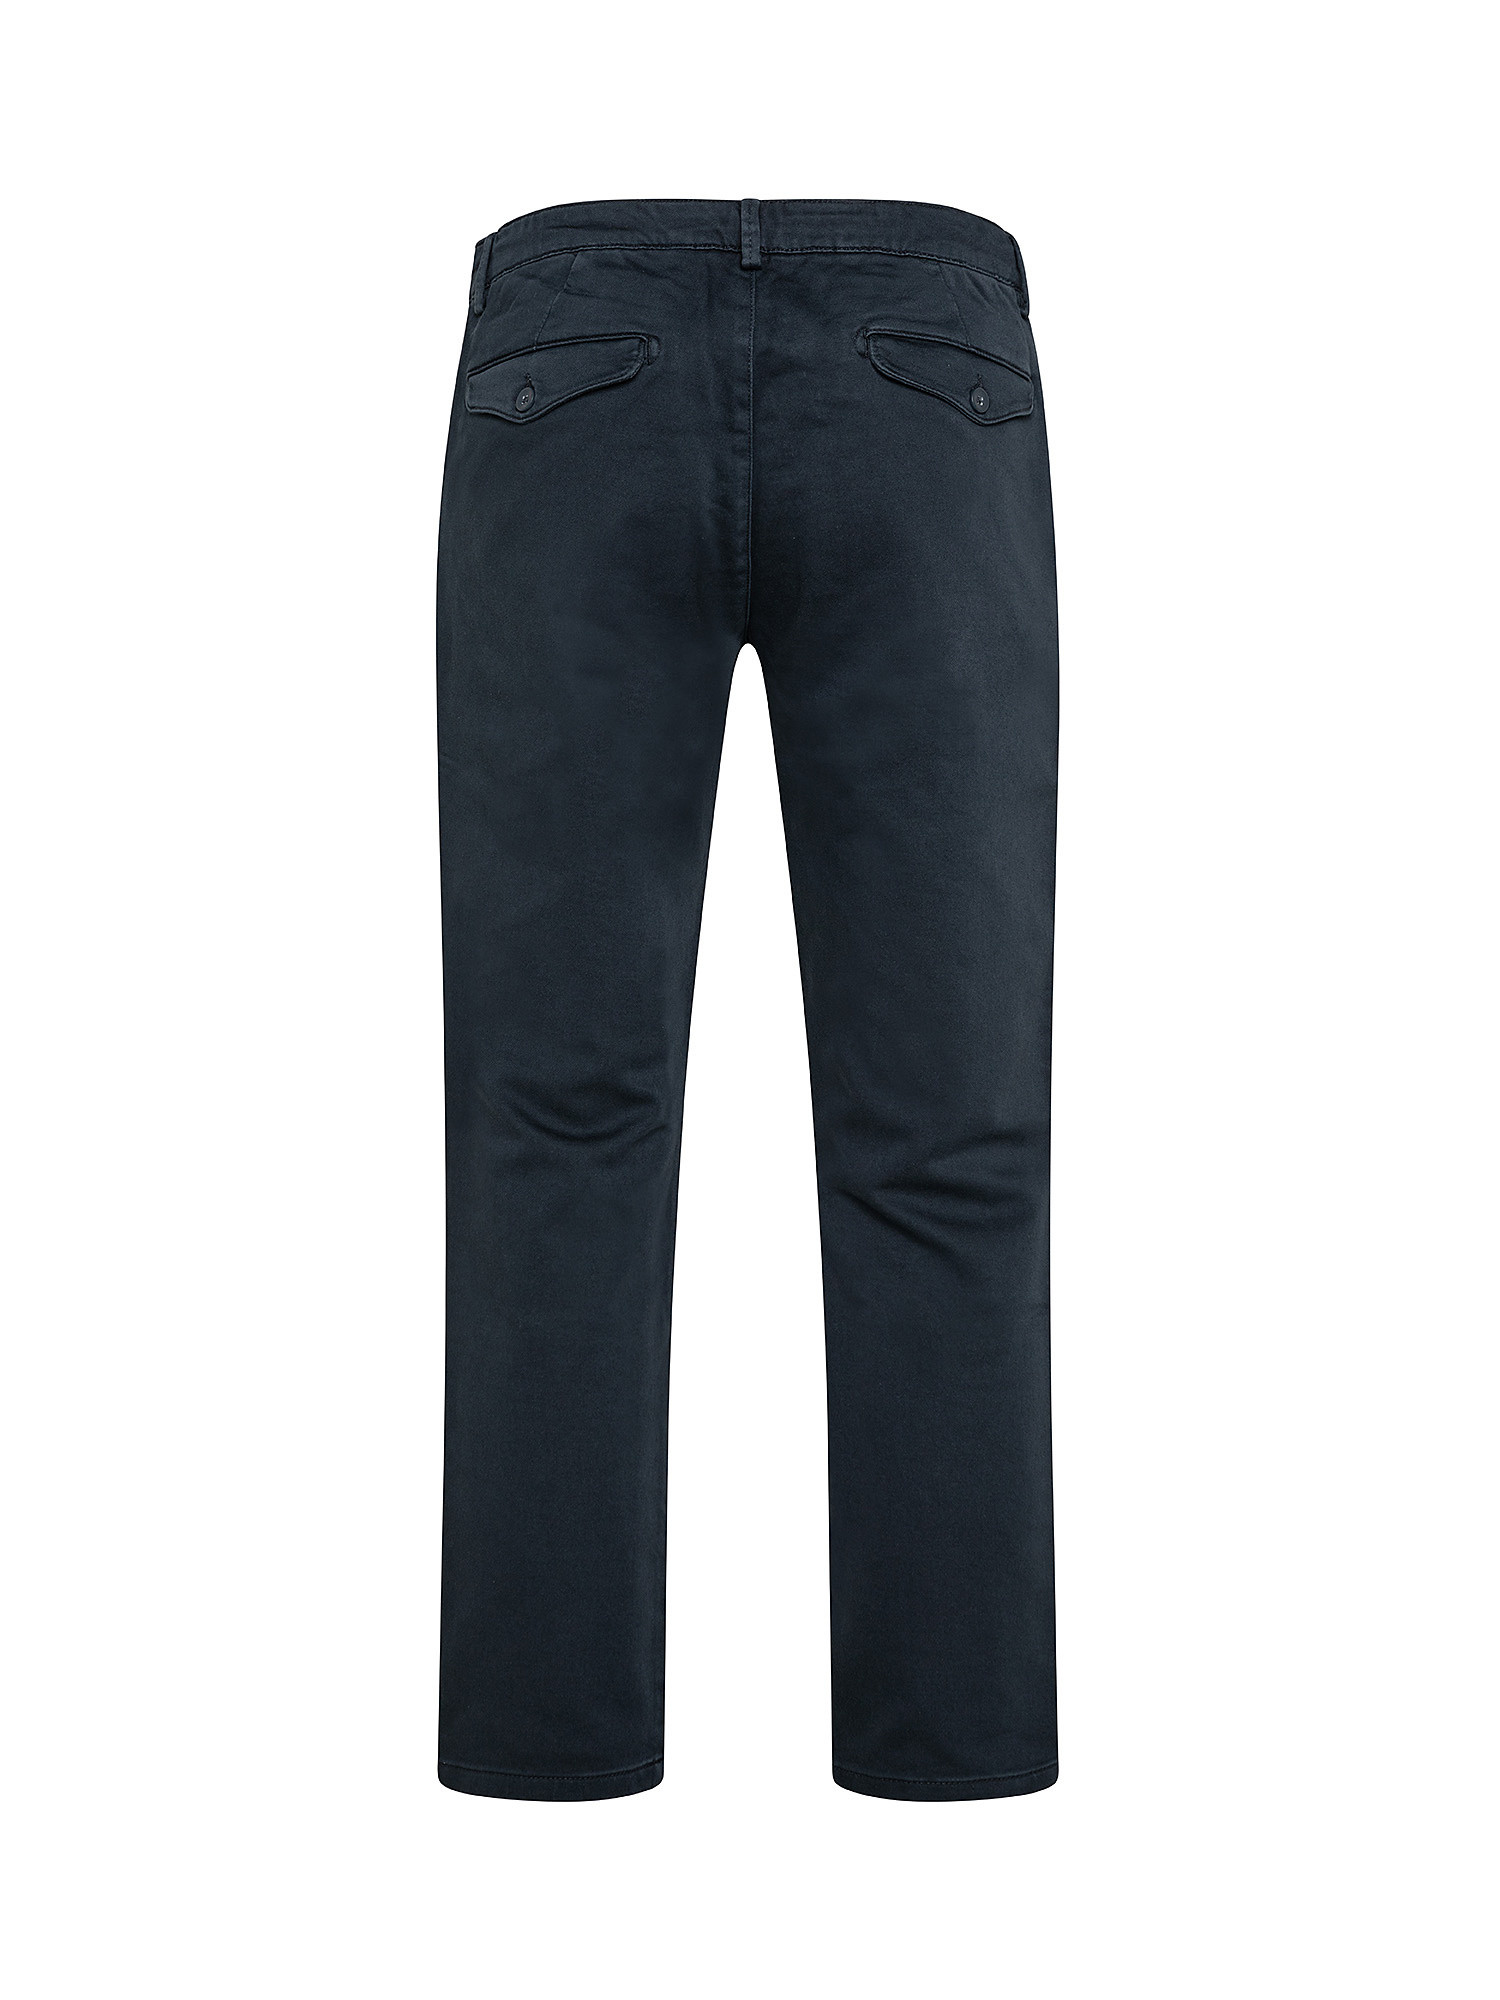 Pantalone chinos regular in felpa, Blu, large image number 1